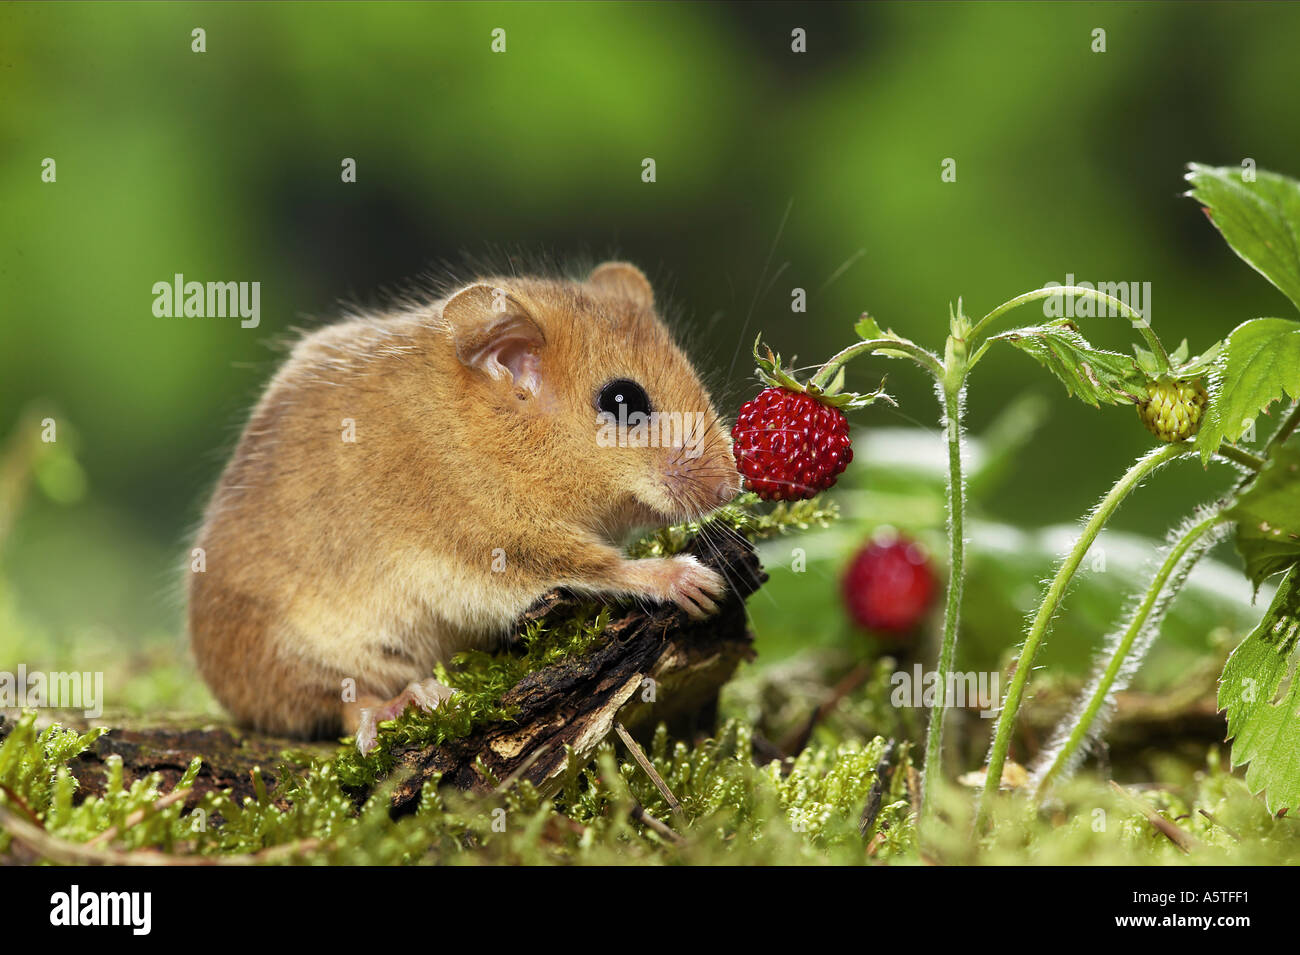 hazel mouse at woodstrawberry / Muscaridinus avellanarius Stock Photo